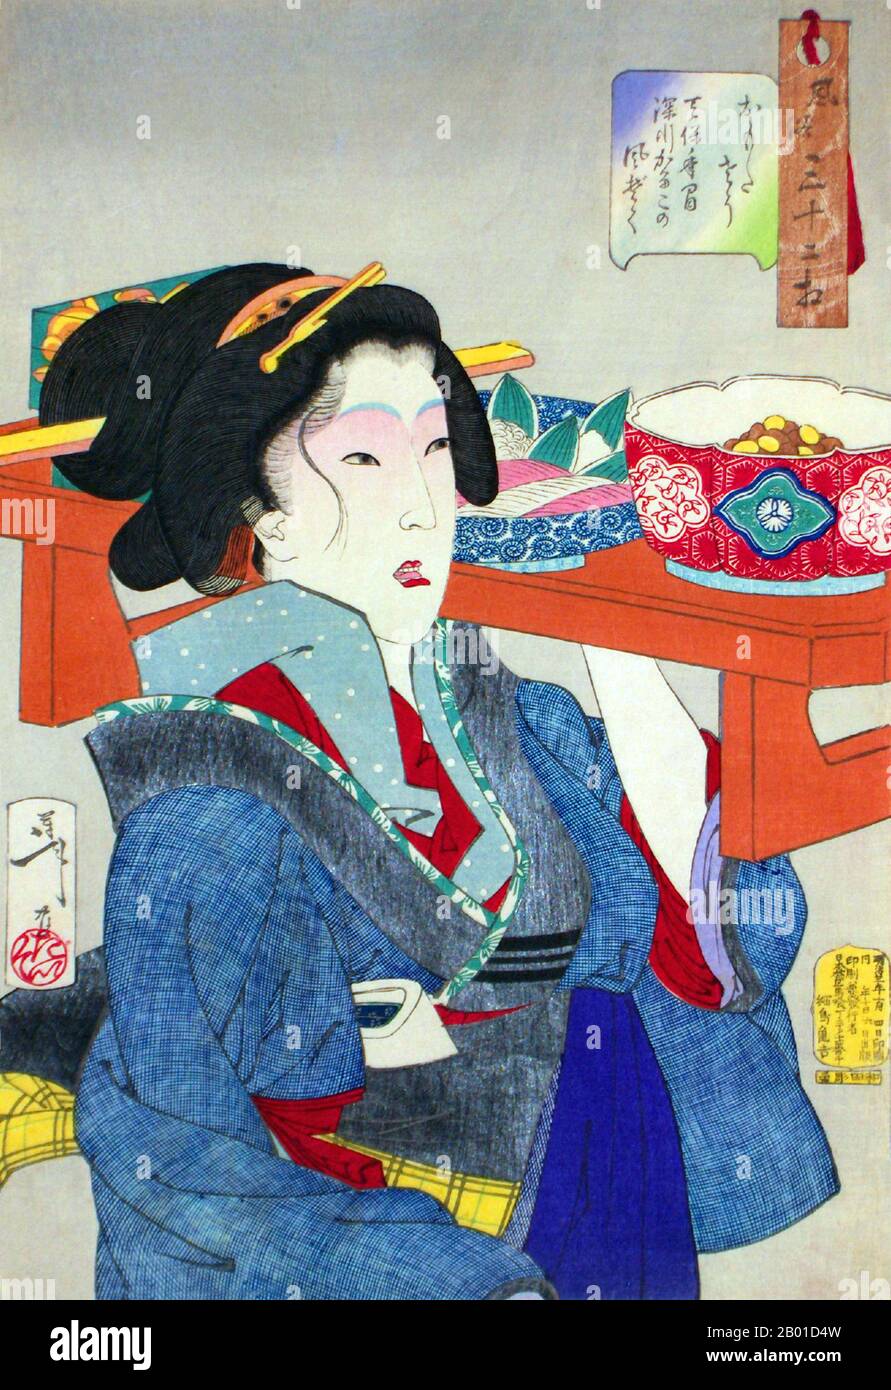 Japon: "Regard pesé-vers le bas - l'apparence d'une serveuse à Fukagawa dans l'ère Tempo". Imprimé Ukiyo-e de la série "Ttrente deux aspects de la femme" par Tsukioka Yoshitoshi (30 avril 1839 - 9 juin 1892), 1888. La serveuse porte un plateau de riz, de sashimi et de haricots. Tsukioka Yoshitoshi, également appelé Tiso Yoshitoshi, était un artiste japonais. Il est largement reconnu comme le dernier grand maître d'Ukiyo-e, un type d'impression de blocs de bois japonais. Il est également considéré comme l'un des plus grands innovateurs de la forme. Banque D'Images